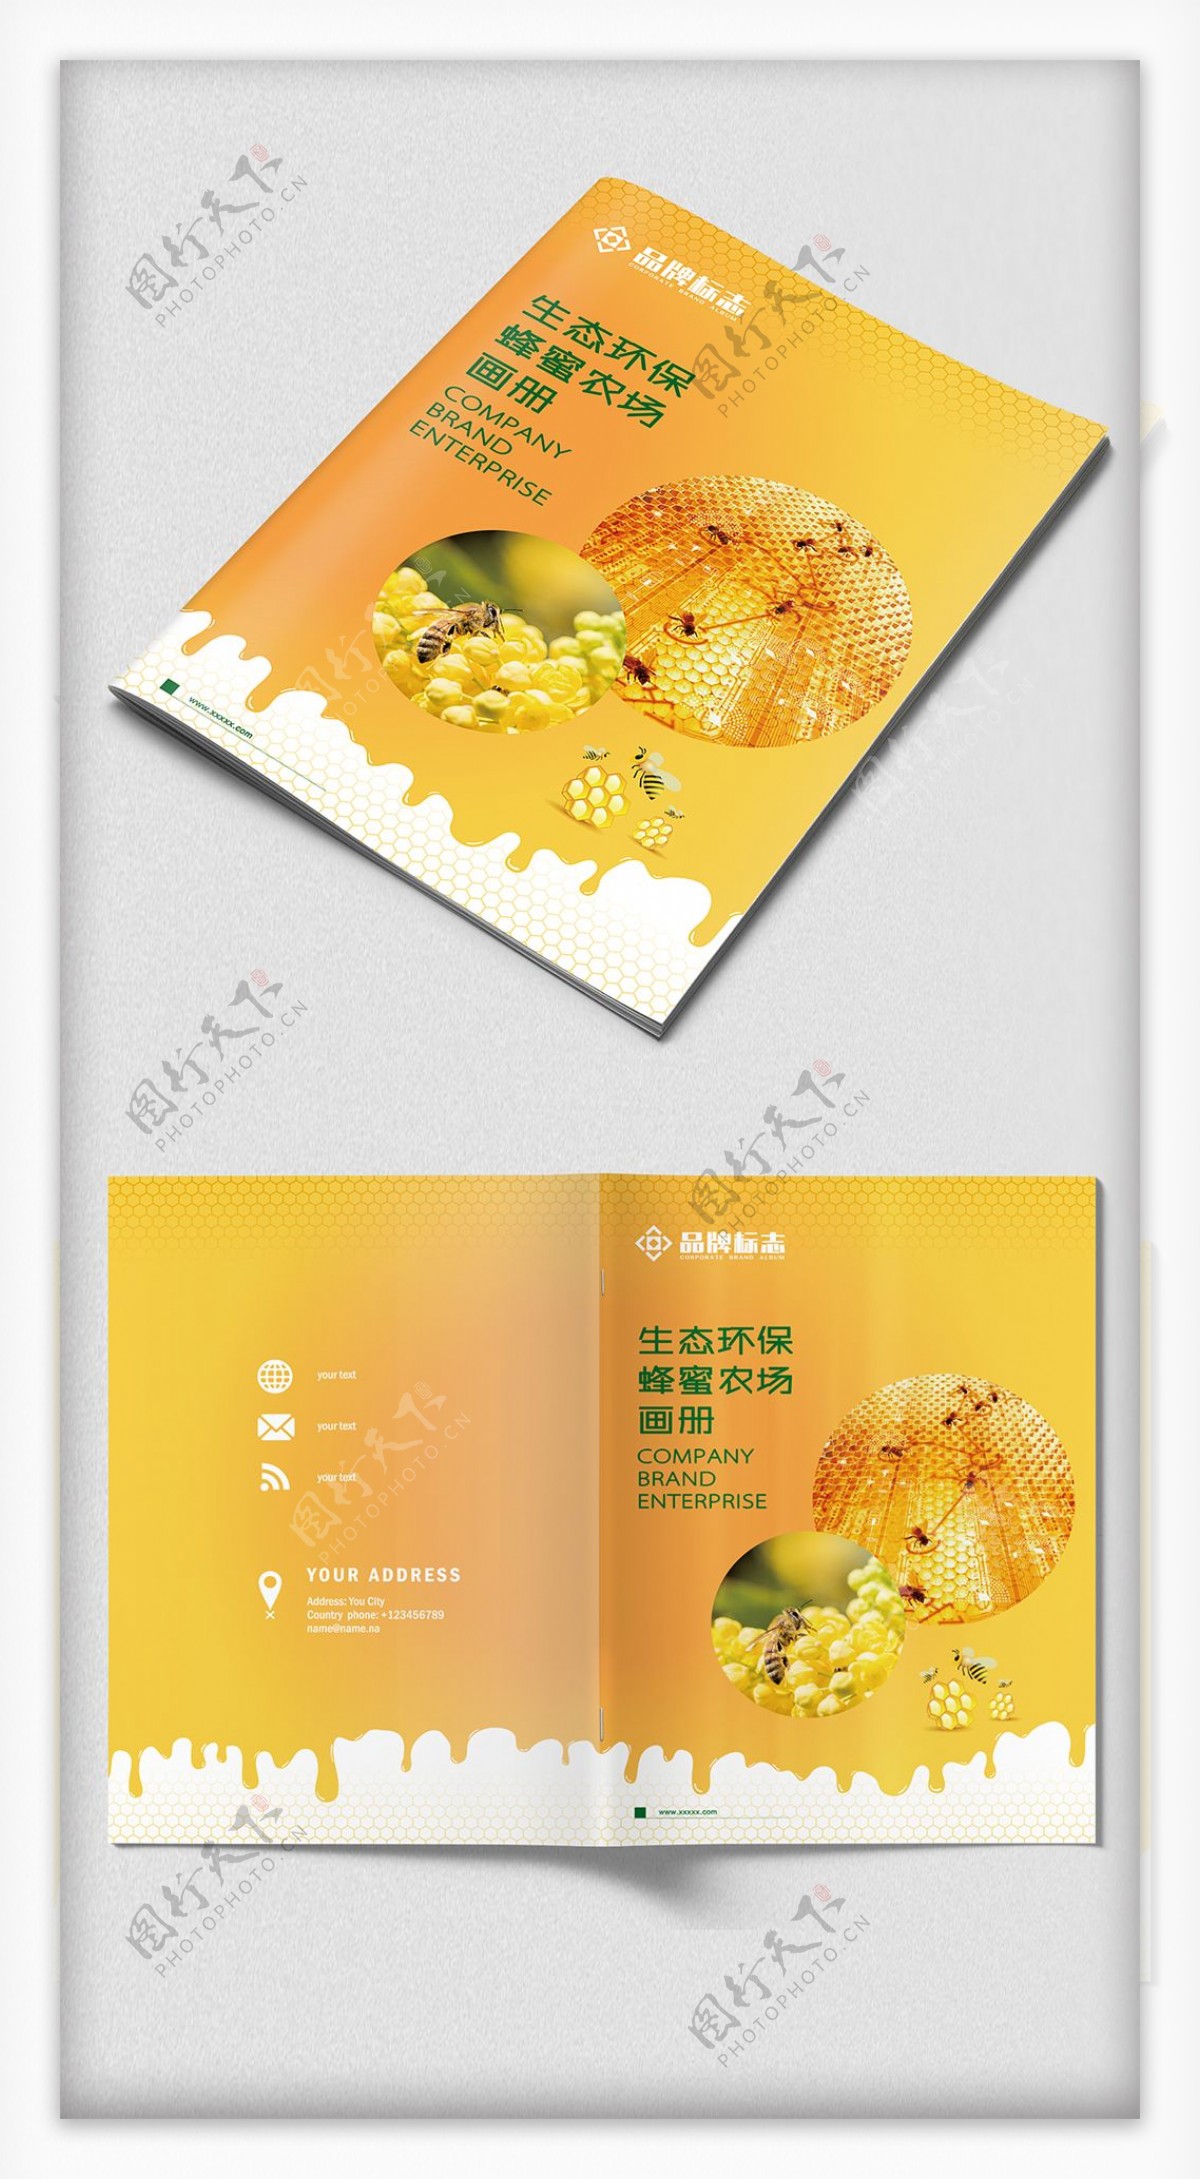 黄色环保生态企业宣传画册封面设计